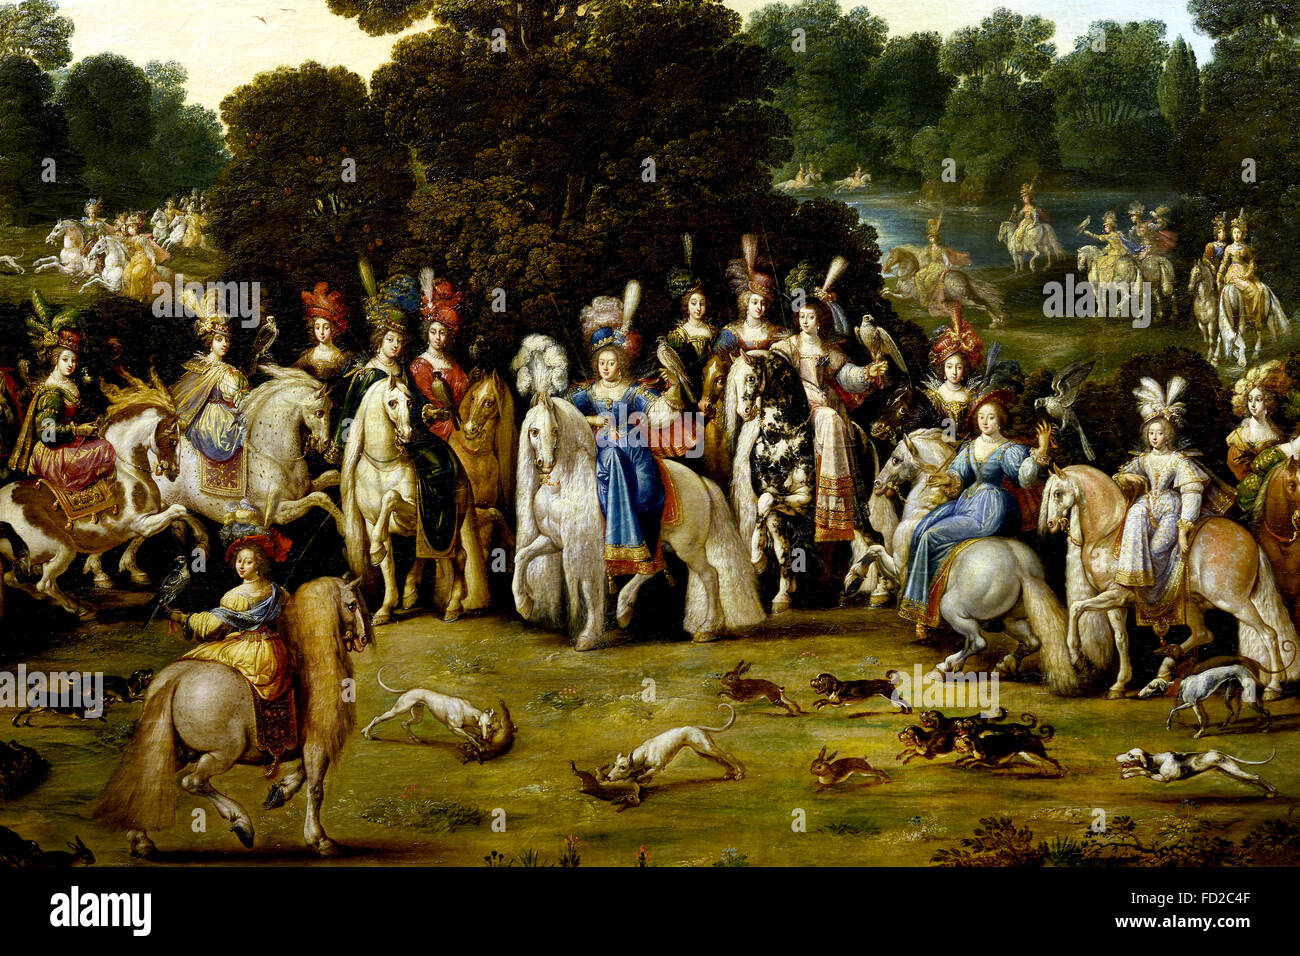 InIntended pour décorer le bureau de la Reine Anne d'Autriche, Richelieu château Deruet 1588-1660 France Français française ( l'air (ou 'Autumn'). C'est le premier tableau destiné à décorer le bureau de la Reine Anne d'Autriche, Richelieu château Deruet 1588-1660 France Français française ( l'air (ou 'Autumn'). C'est le premier tableau de la série, acquis par Richelieu, les trois autres sont arrivés plus tard. Il représente la Duchesse de Lorraine accompagnée de mesdames cour lors d'un faucon de chasse. C'est le seul qui n'est pas consacrée à la gloire de la famille royale. ) Banque D'Images